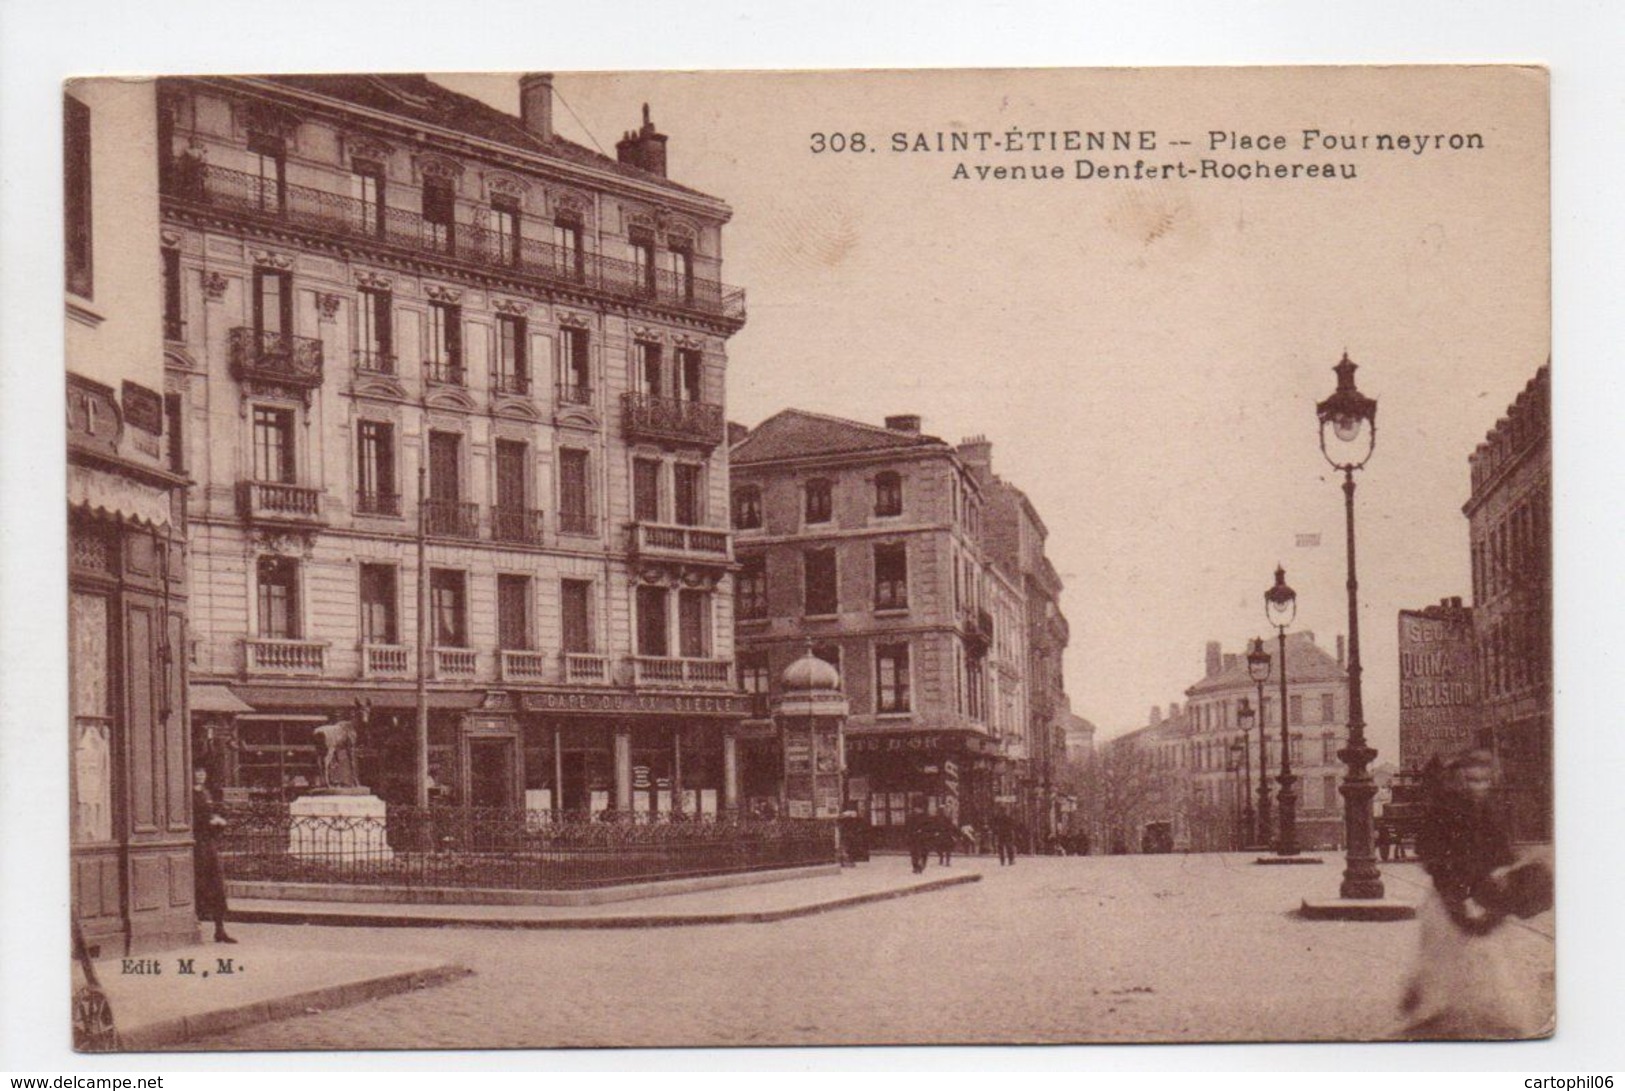 - CPA SAINT-ETIENNE (42) - Place Fourneyron - Avenue Denfert-Rochereau 1917 - Edition M. M. 308 - - Saint Etienne